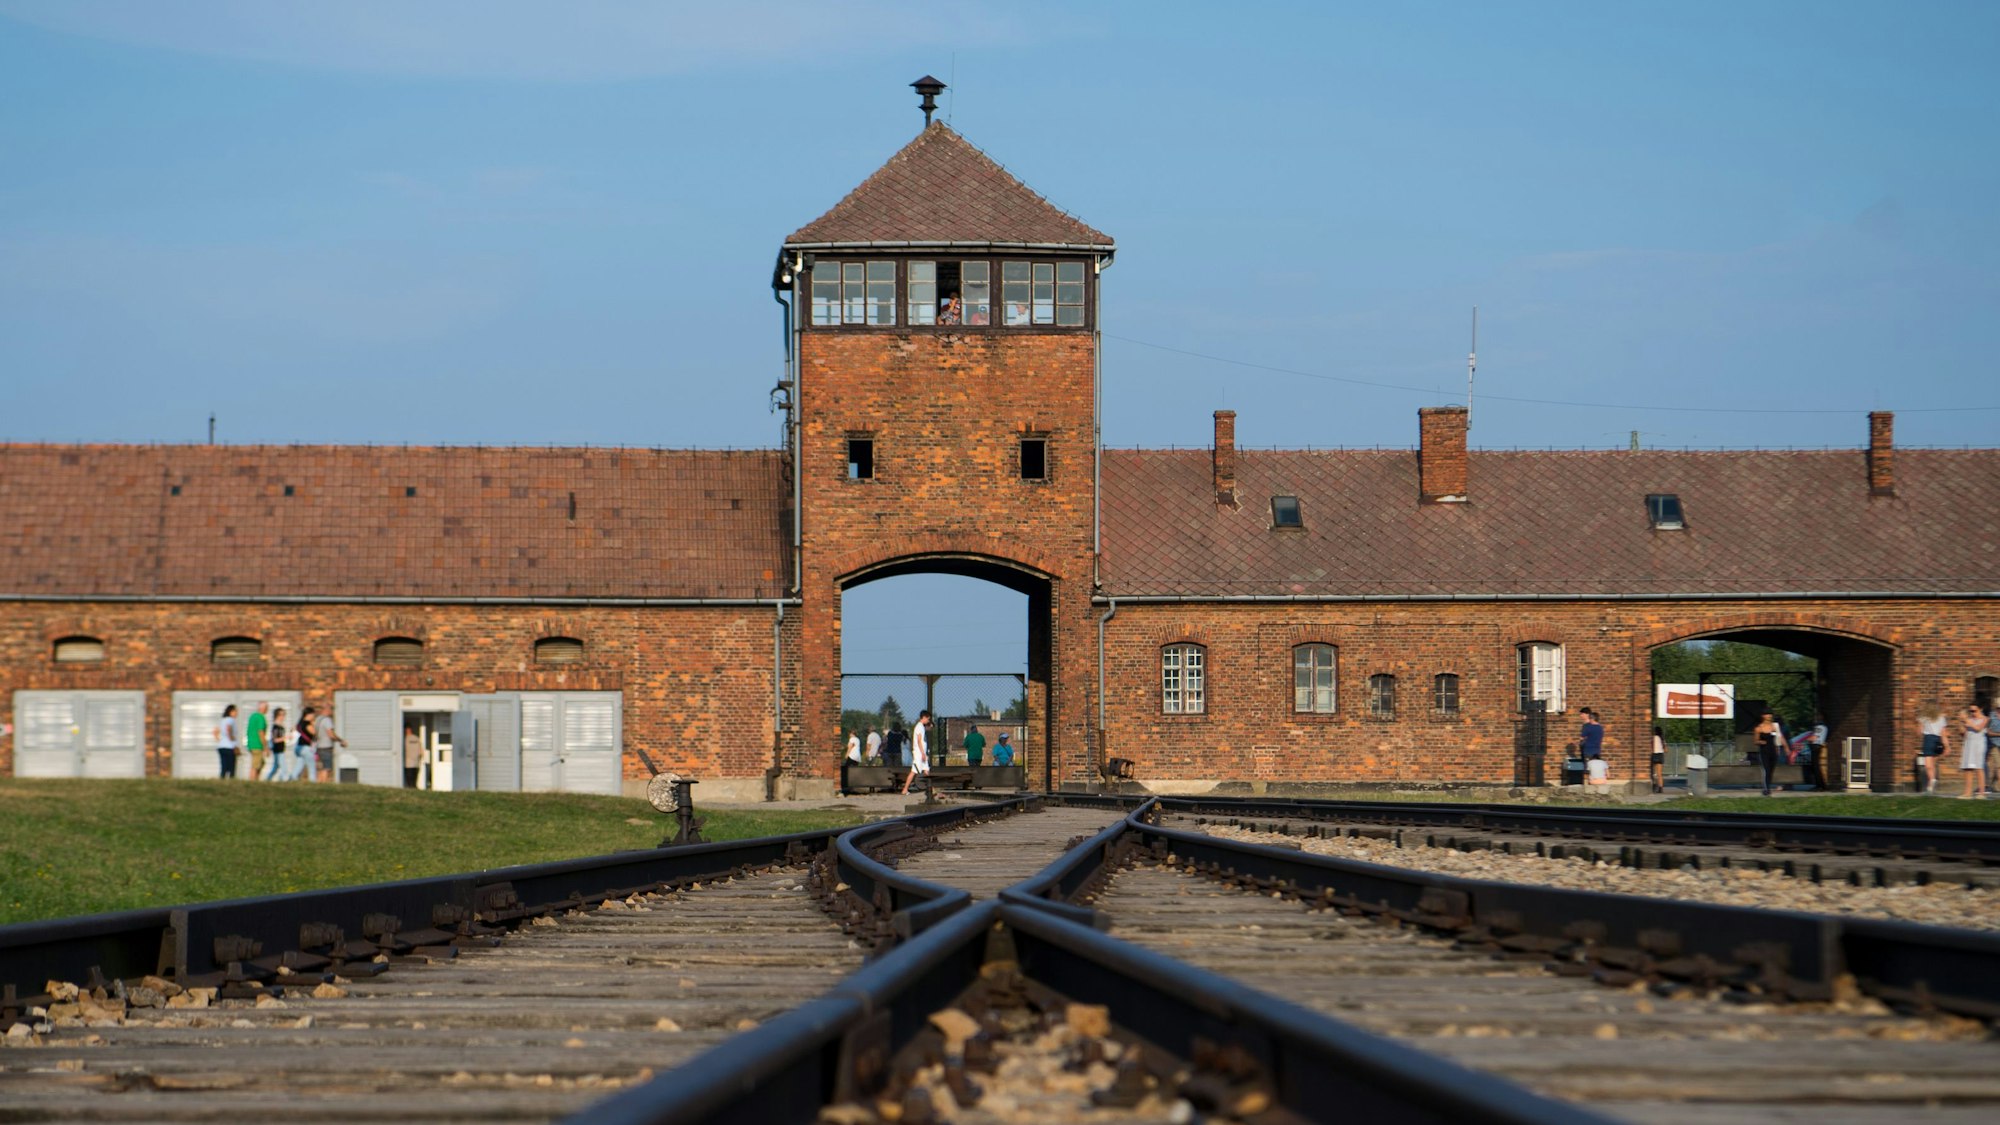 Besucher gehen am historischen Eingangstor des Vernichtungs- und Konzentrationslagers Auschwitz-Birkenau vorbei. Im Vordergrund sind die Gleise zu sehen, die in das Lager führen.